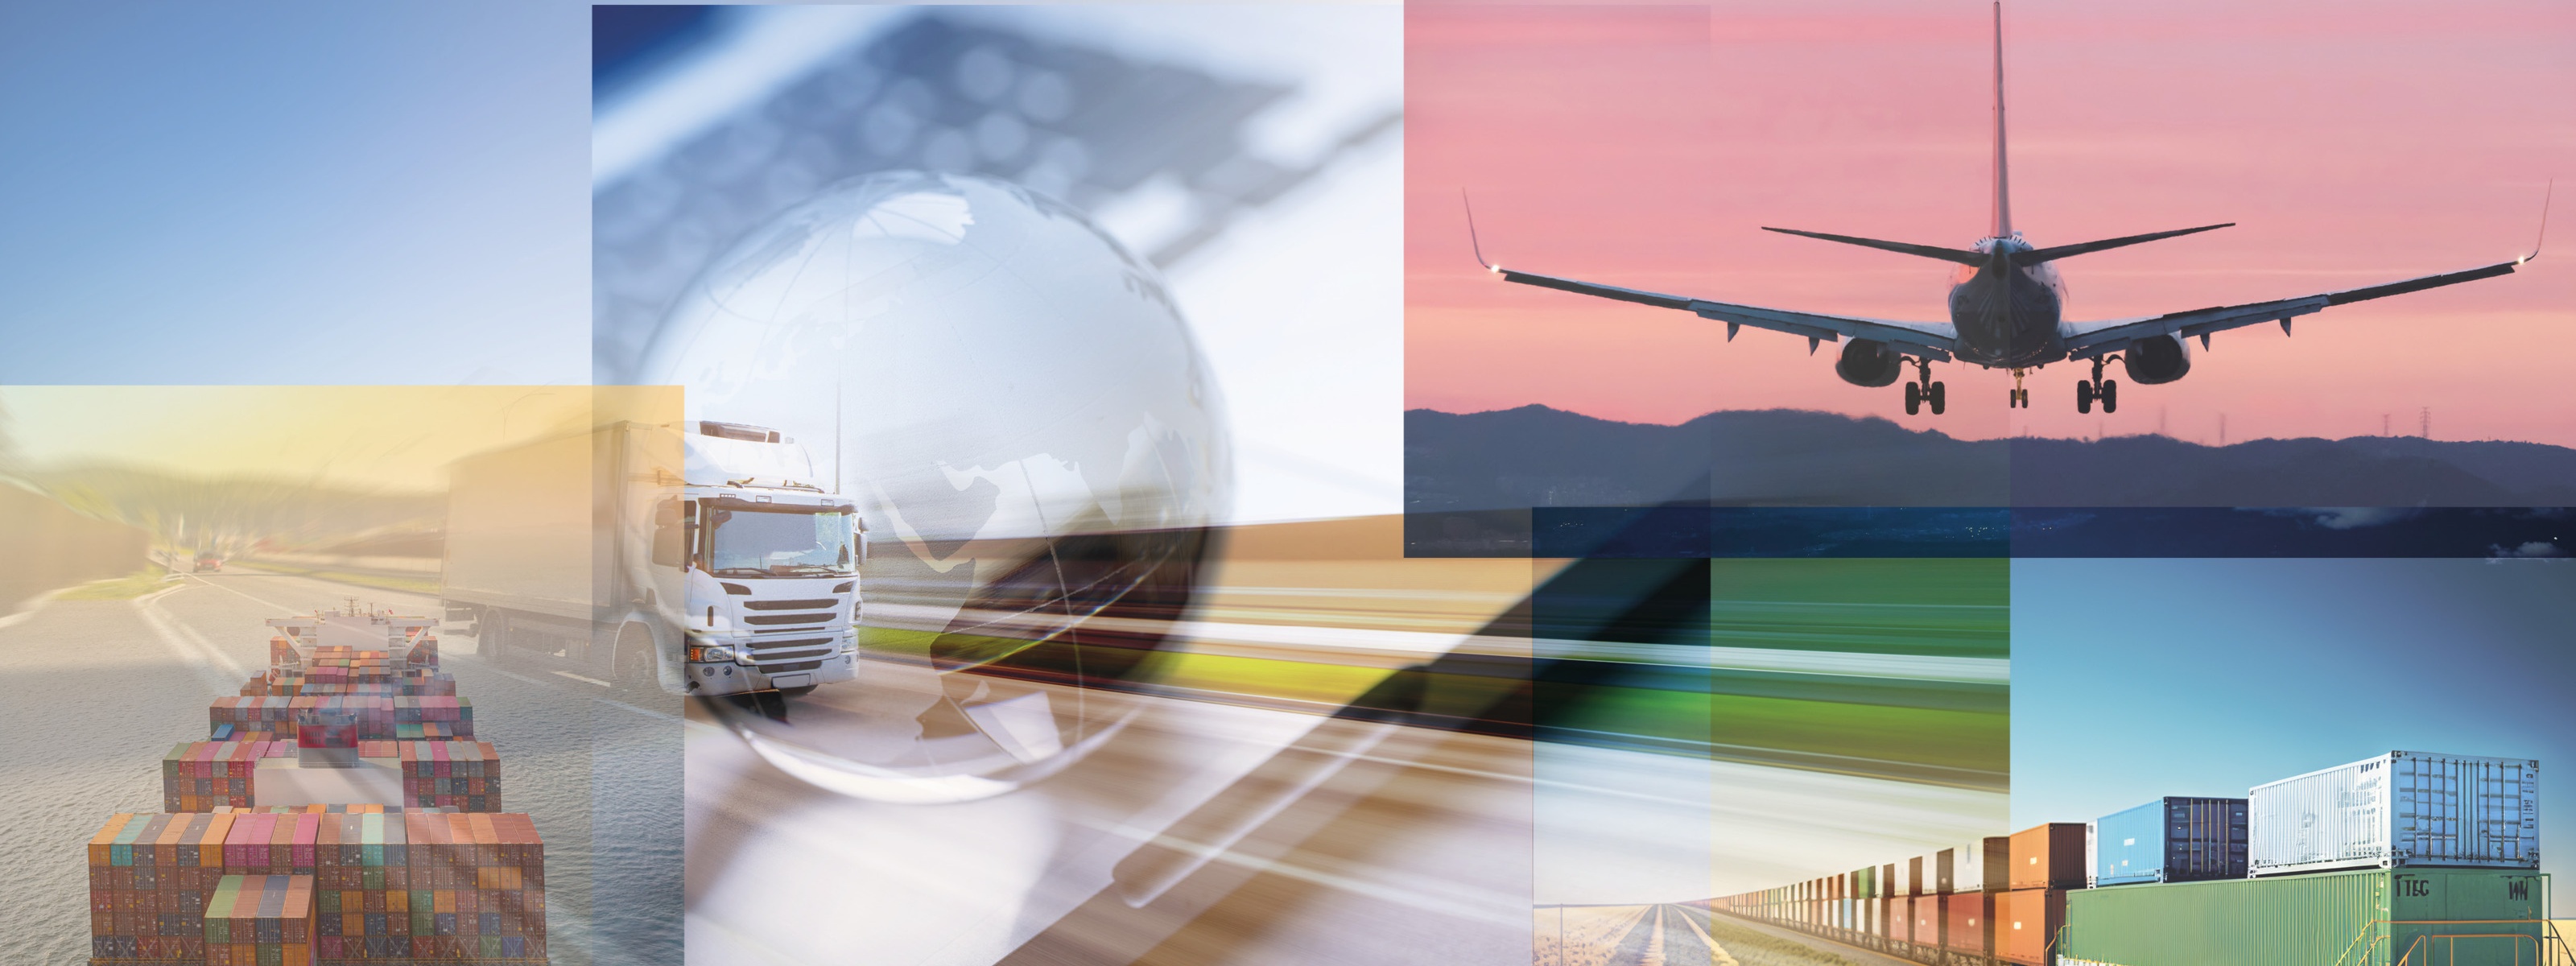 Collage aus mehreren Objekten zum Thema Verkehr und Güterbeförderung: Lkws, Schiff, Flugzeug und Zug